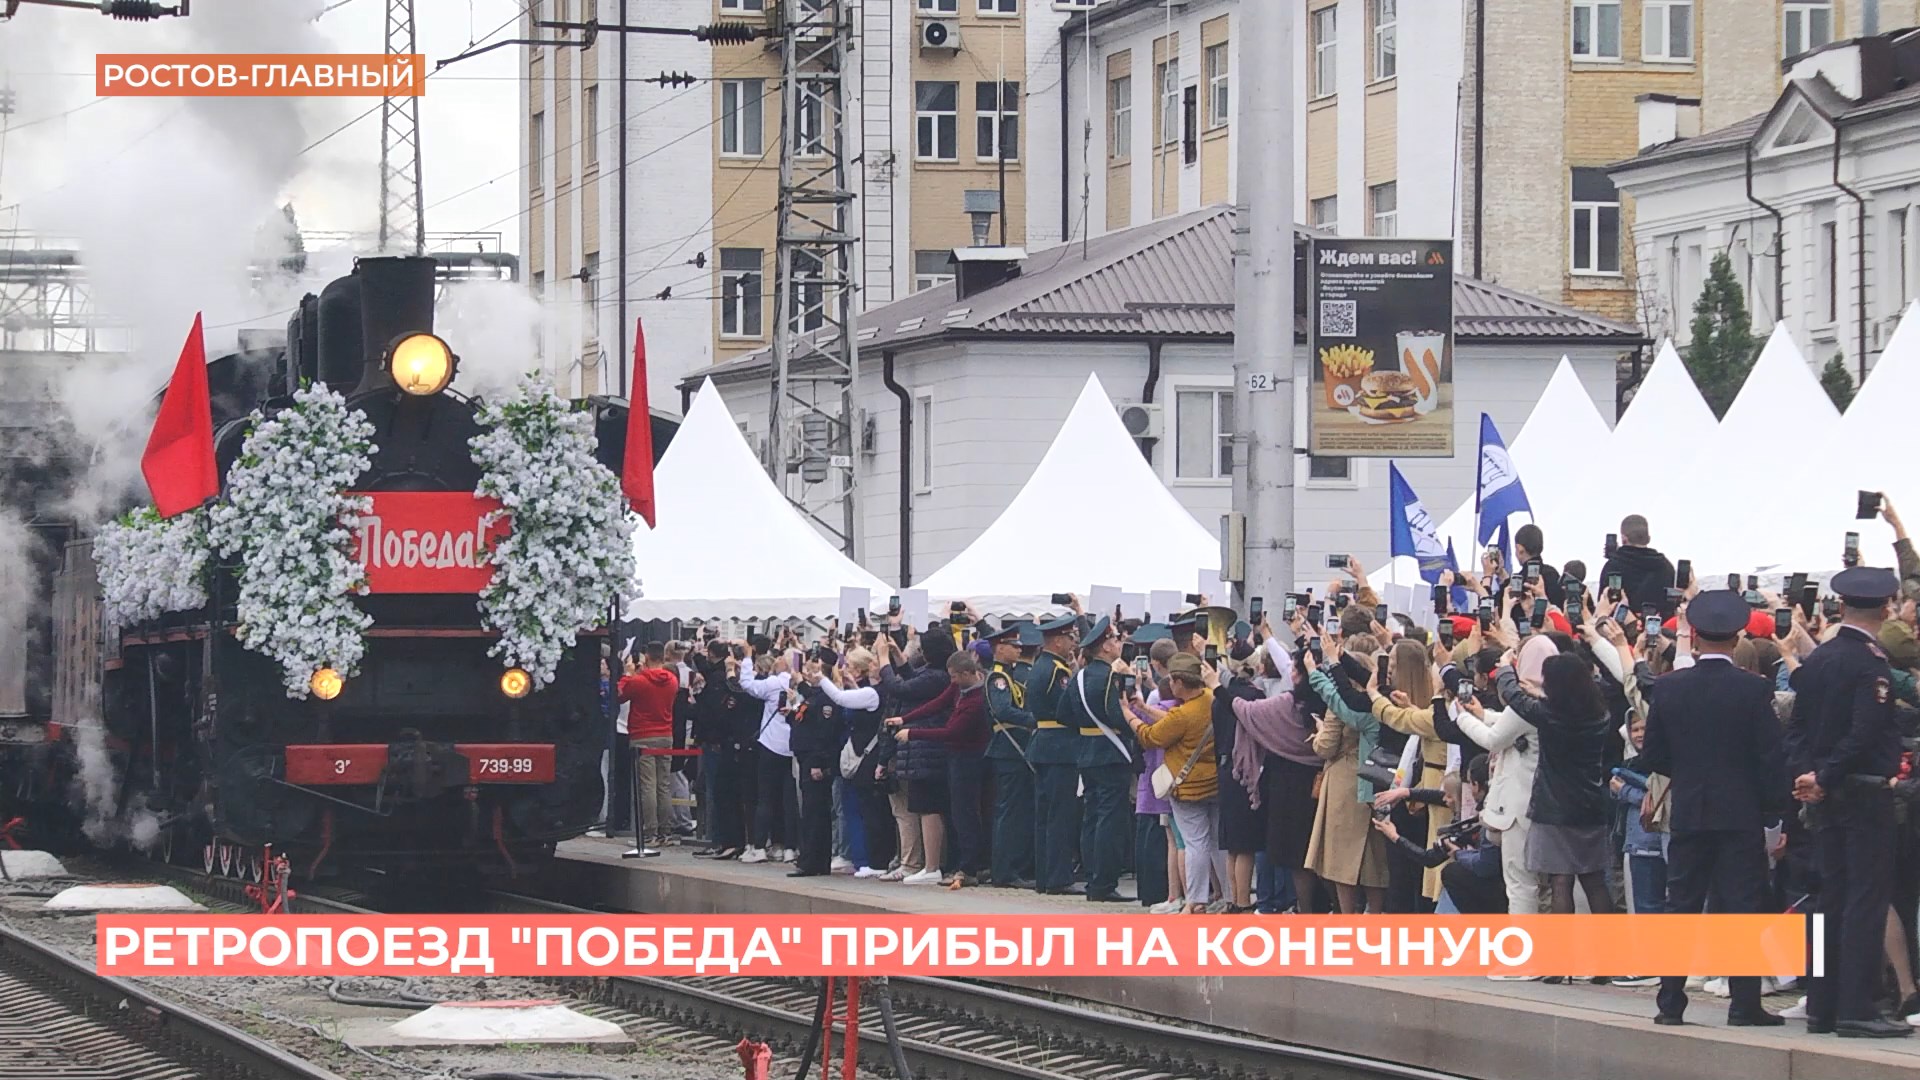 Ретропоезд «Победа» прибыл сегодня на Ростов-Главный